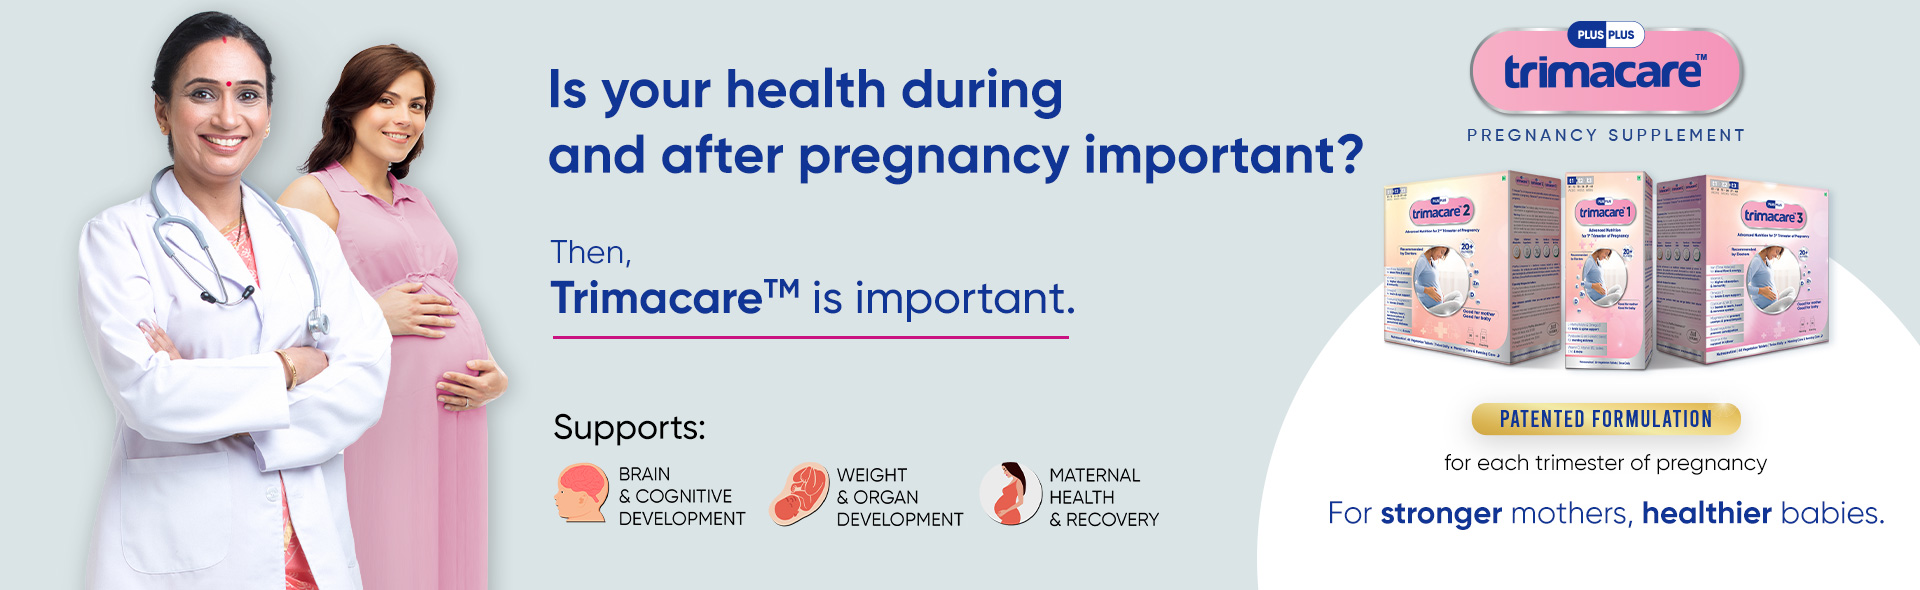 prenatal vitamins during pregnancy